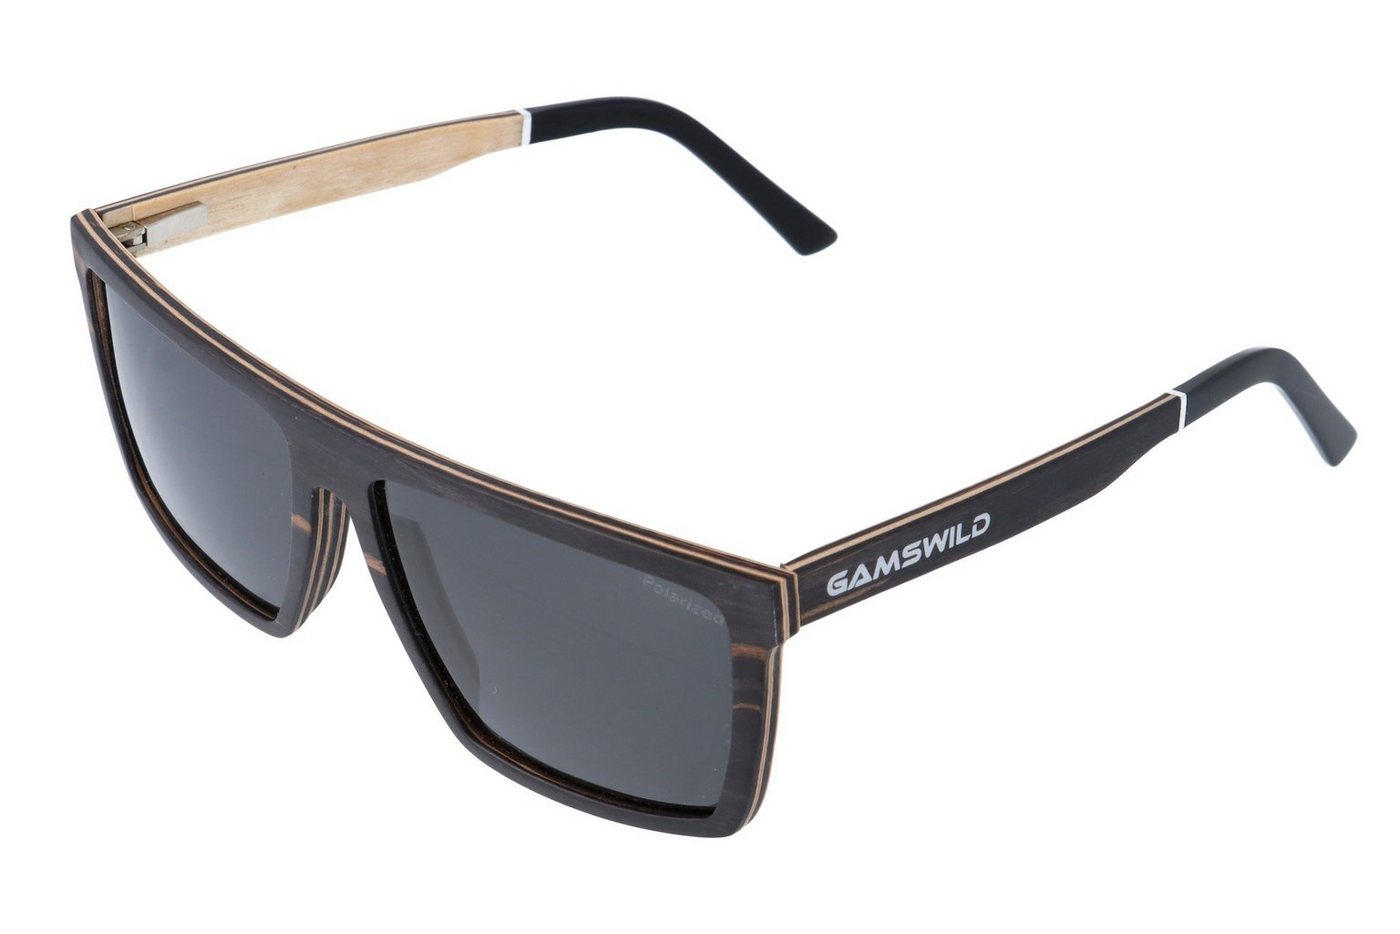 Gamswild Sonnenbrille UV400 GAMSSTYLE Holzbrille polarisierte Gläser getönt Damen Herren Modell WM0010, braun, schwarz von Gamswild